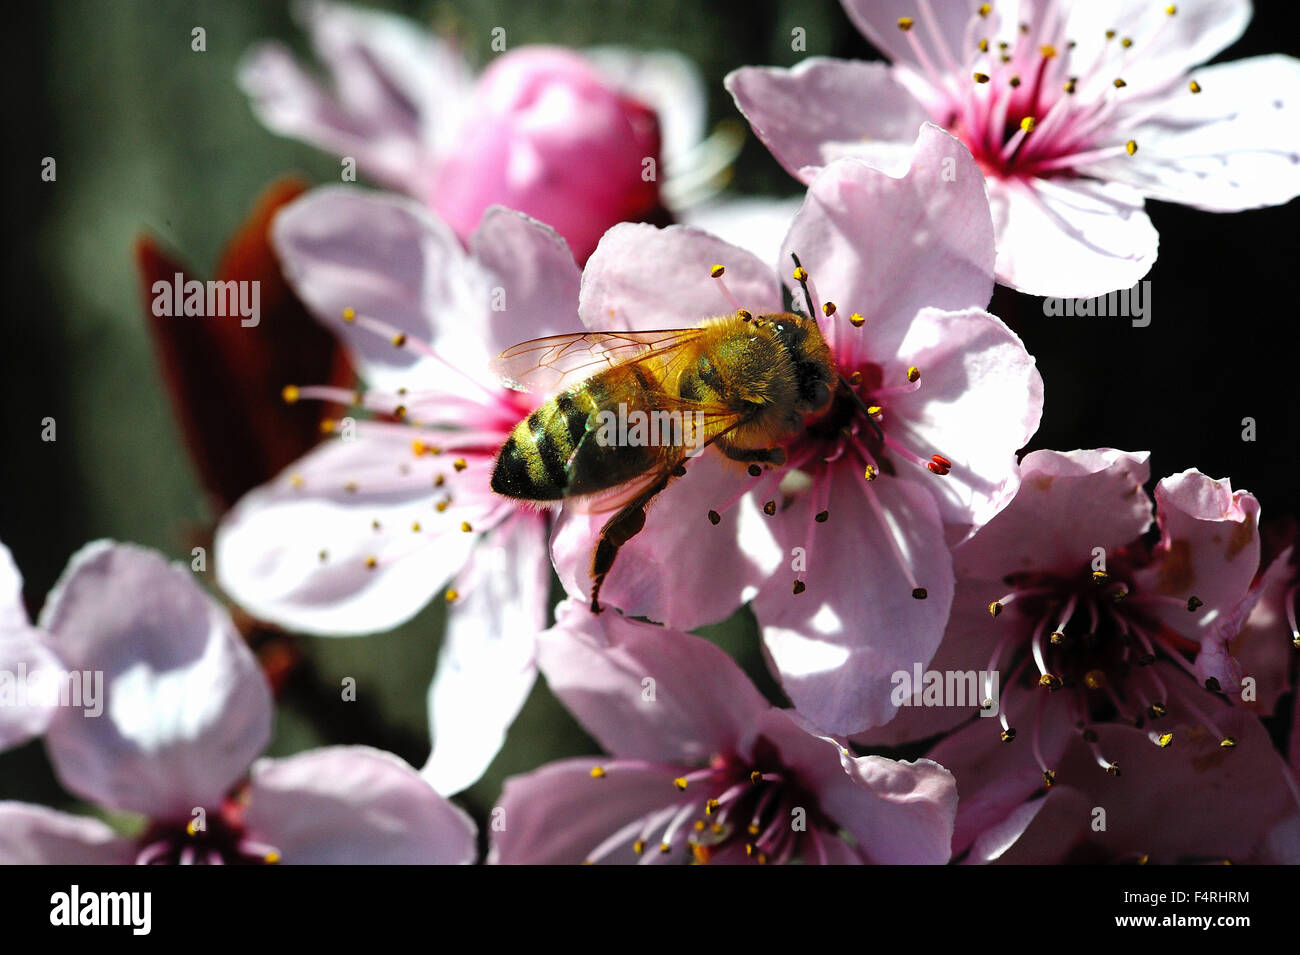 Allemagne, fleurit, s'épanouit, abeilles, printemps, fleurs, fruits, fleurs, arbres en fleurs insectes, pollen, pollen de fleur de sang, pl Banque D'Images